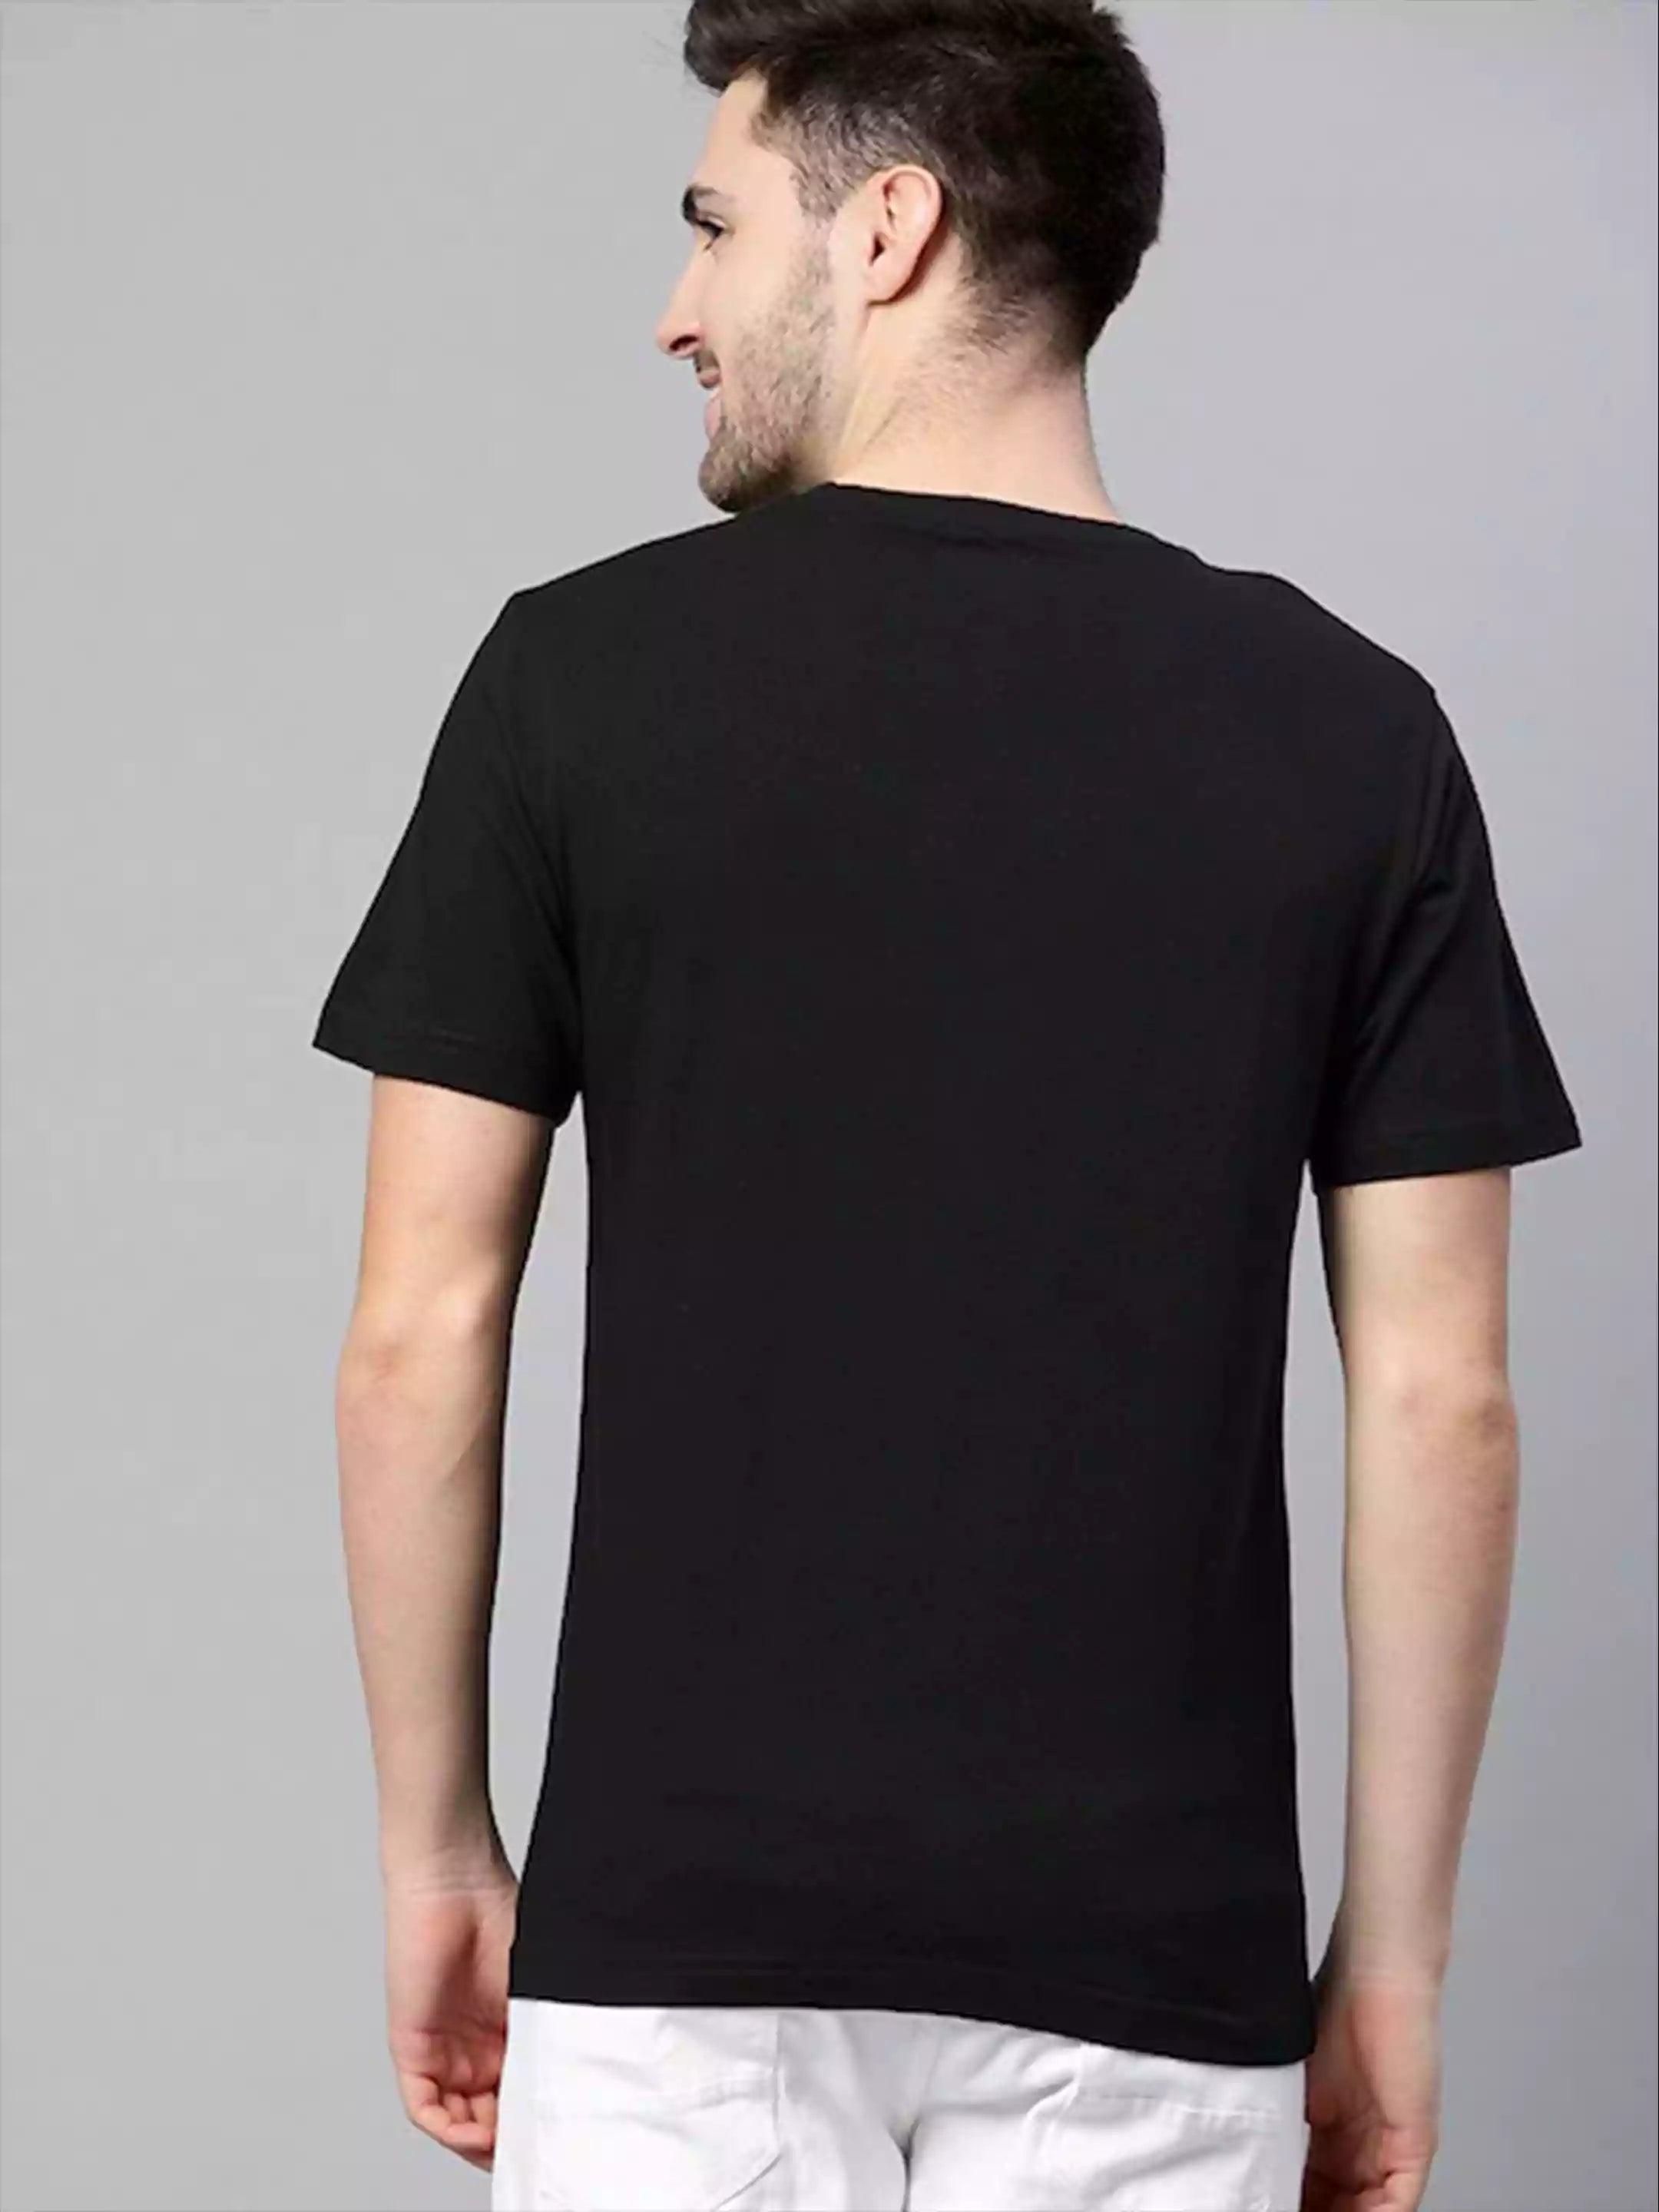 Hangover T-shirt - Sukhiaatma Unisex Graphic Printed Black T-shirt